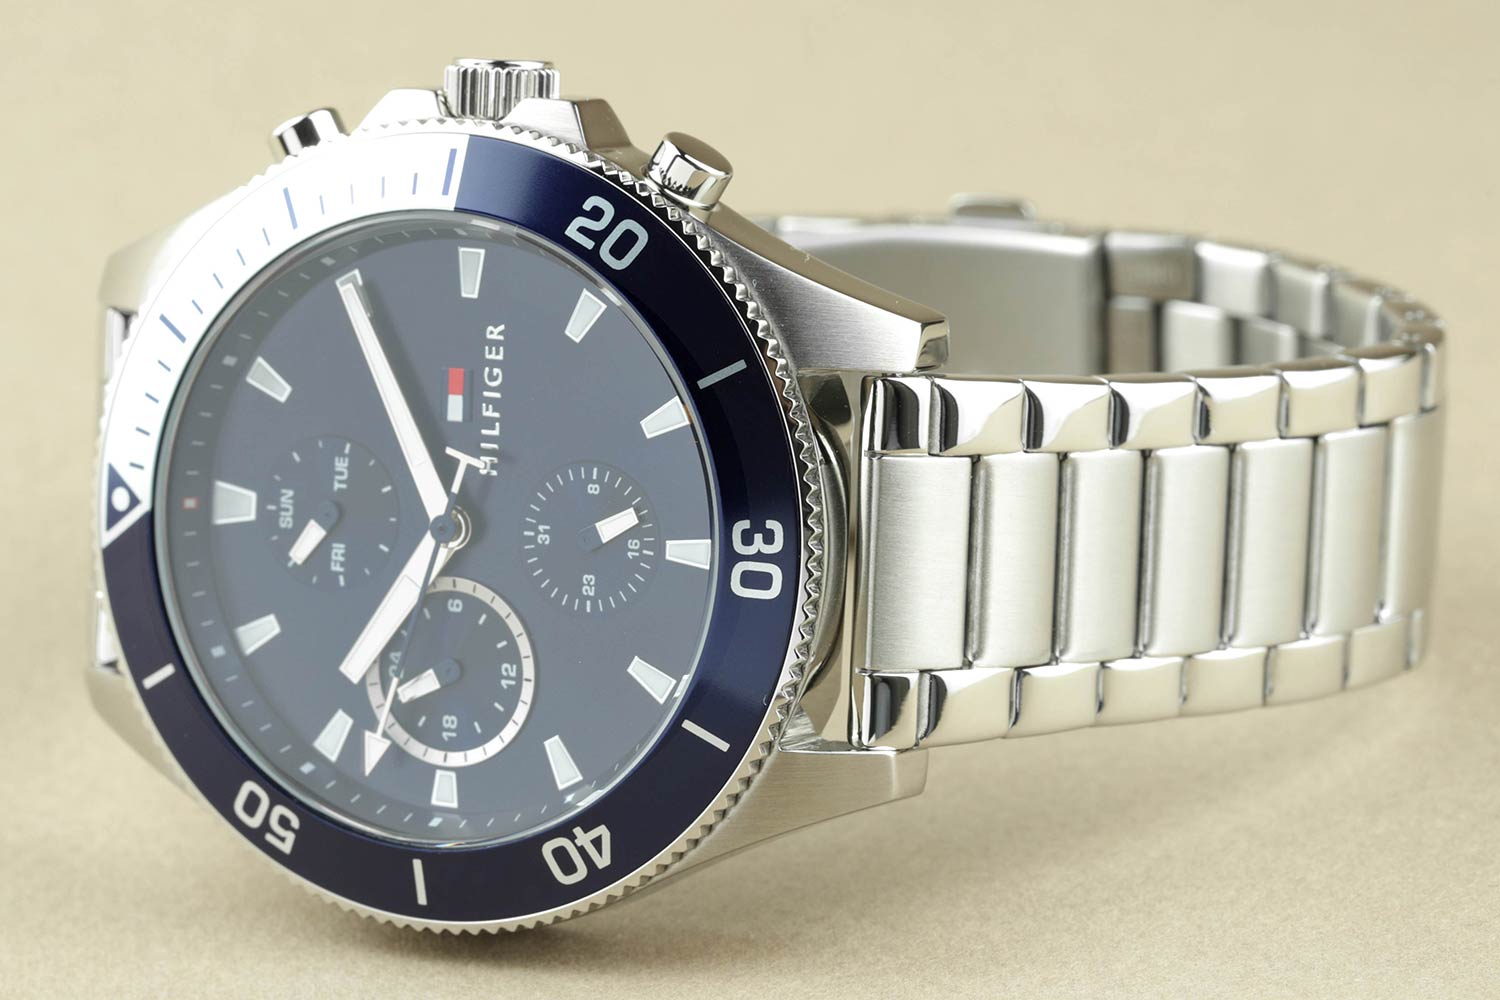 Наручные часы Tommy Hilfiger 1791917 AllTime.ru лучшей цене, инструкция, характеристики, фото, интернет-магазине в купить по — описание